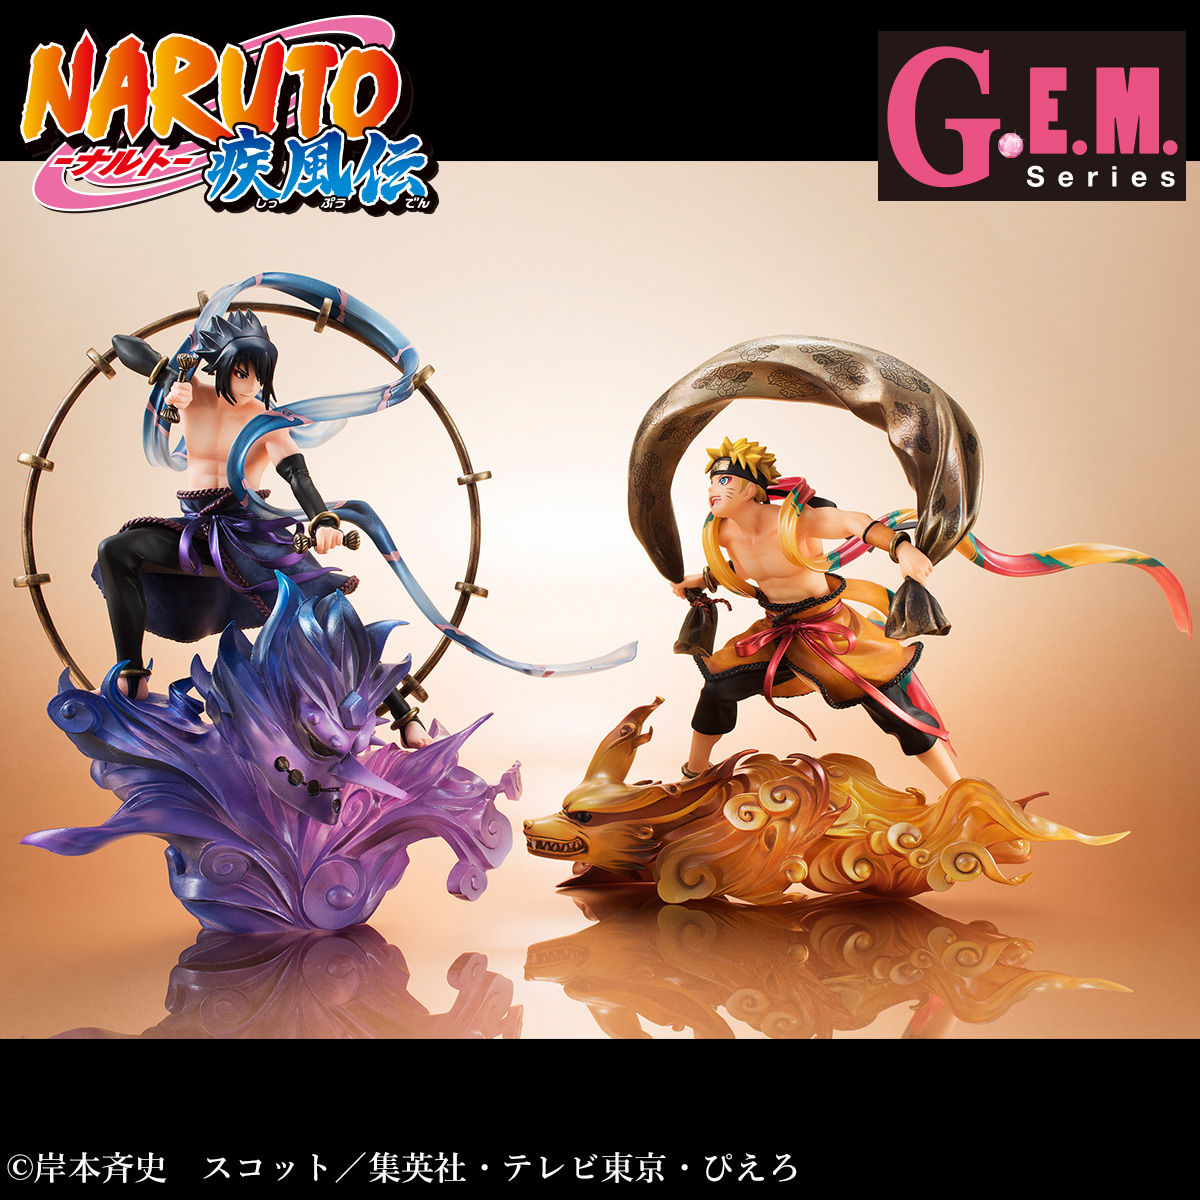 G E M シリーズ Remix Naruto ナルト 疾風伝 風神雷神セット 送料無料 Naruto ナルト 趣味 コレクション プレミアムバンダイ公式通販